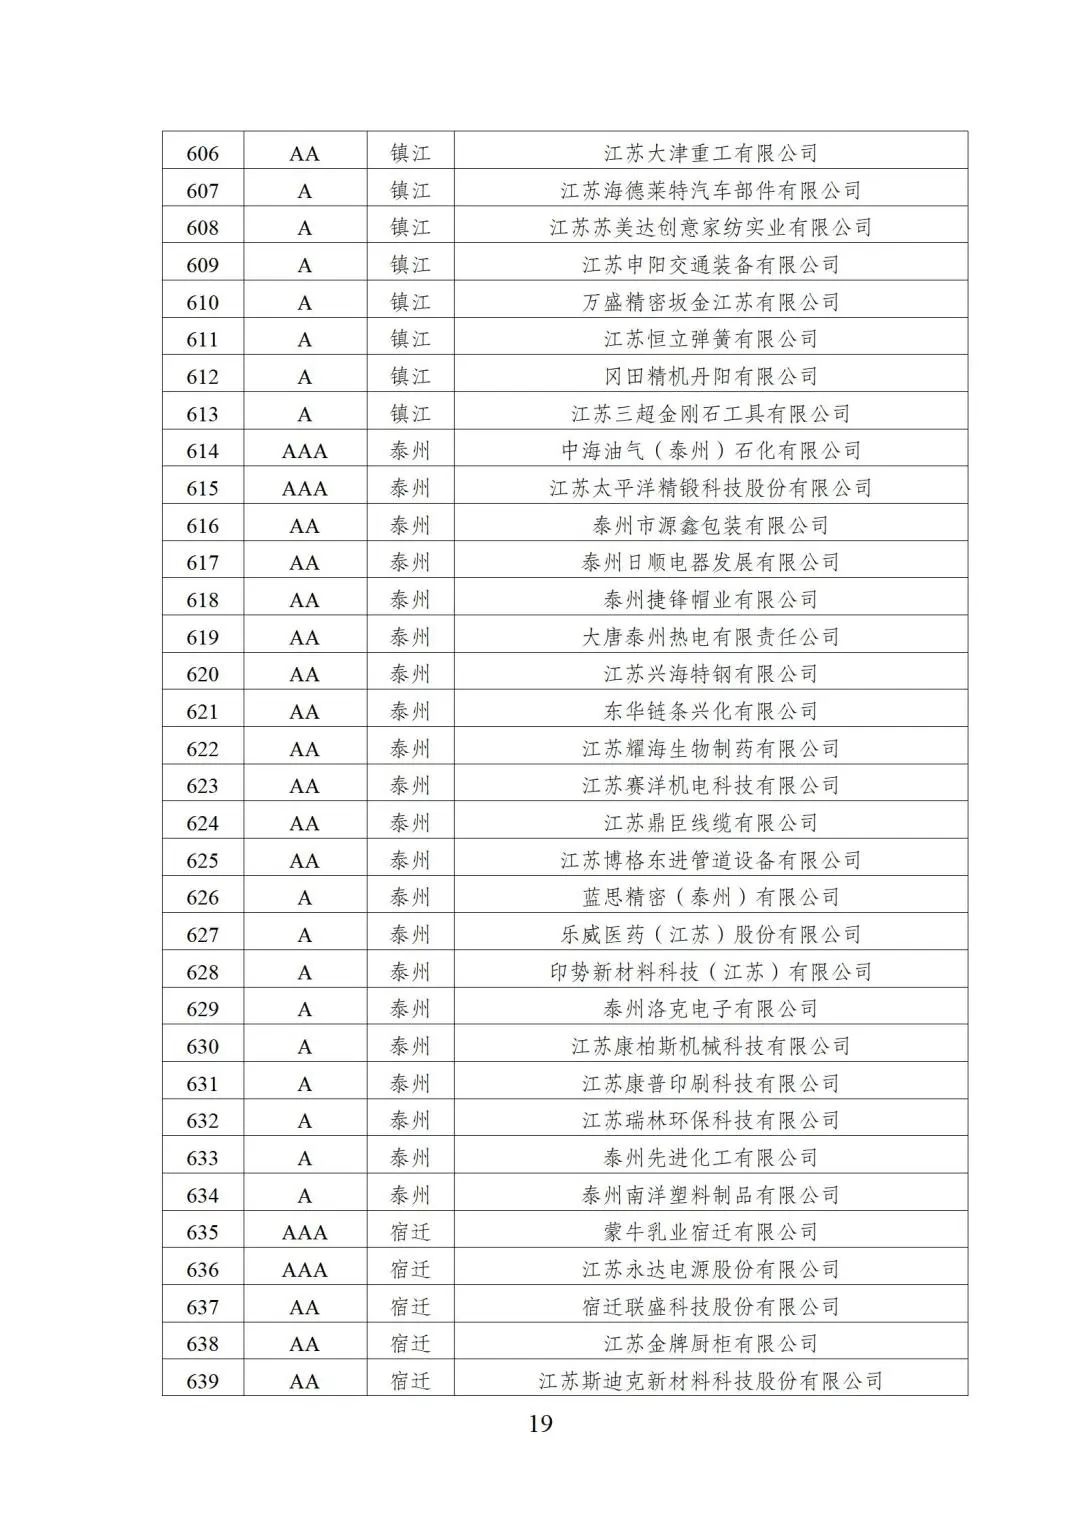 2022年江苏省两化融合管理体系贯标示范企业培育对象名单19.jpg